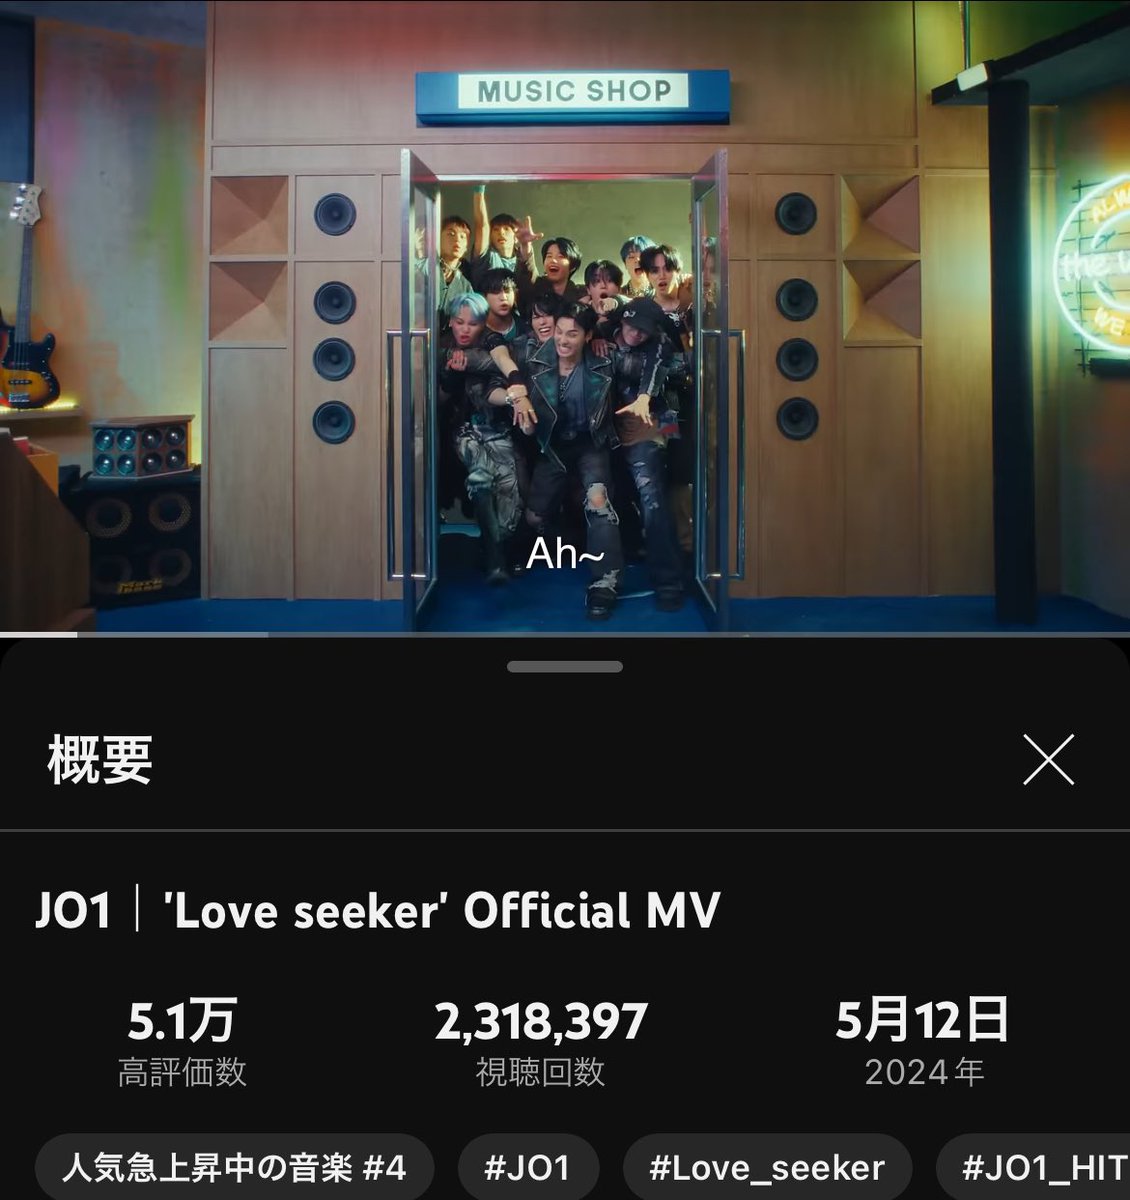 昼休みも急上昇から見てるよ☺️✨

#Love_seeker
#JO1 @official_jo1

JO1｜'Love seeker' Official MV youtu.be/jjr6yrzUAqI?si… @YouTubeより